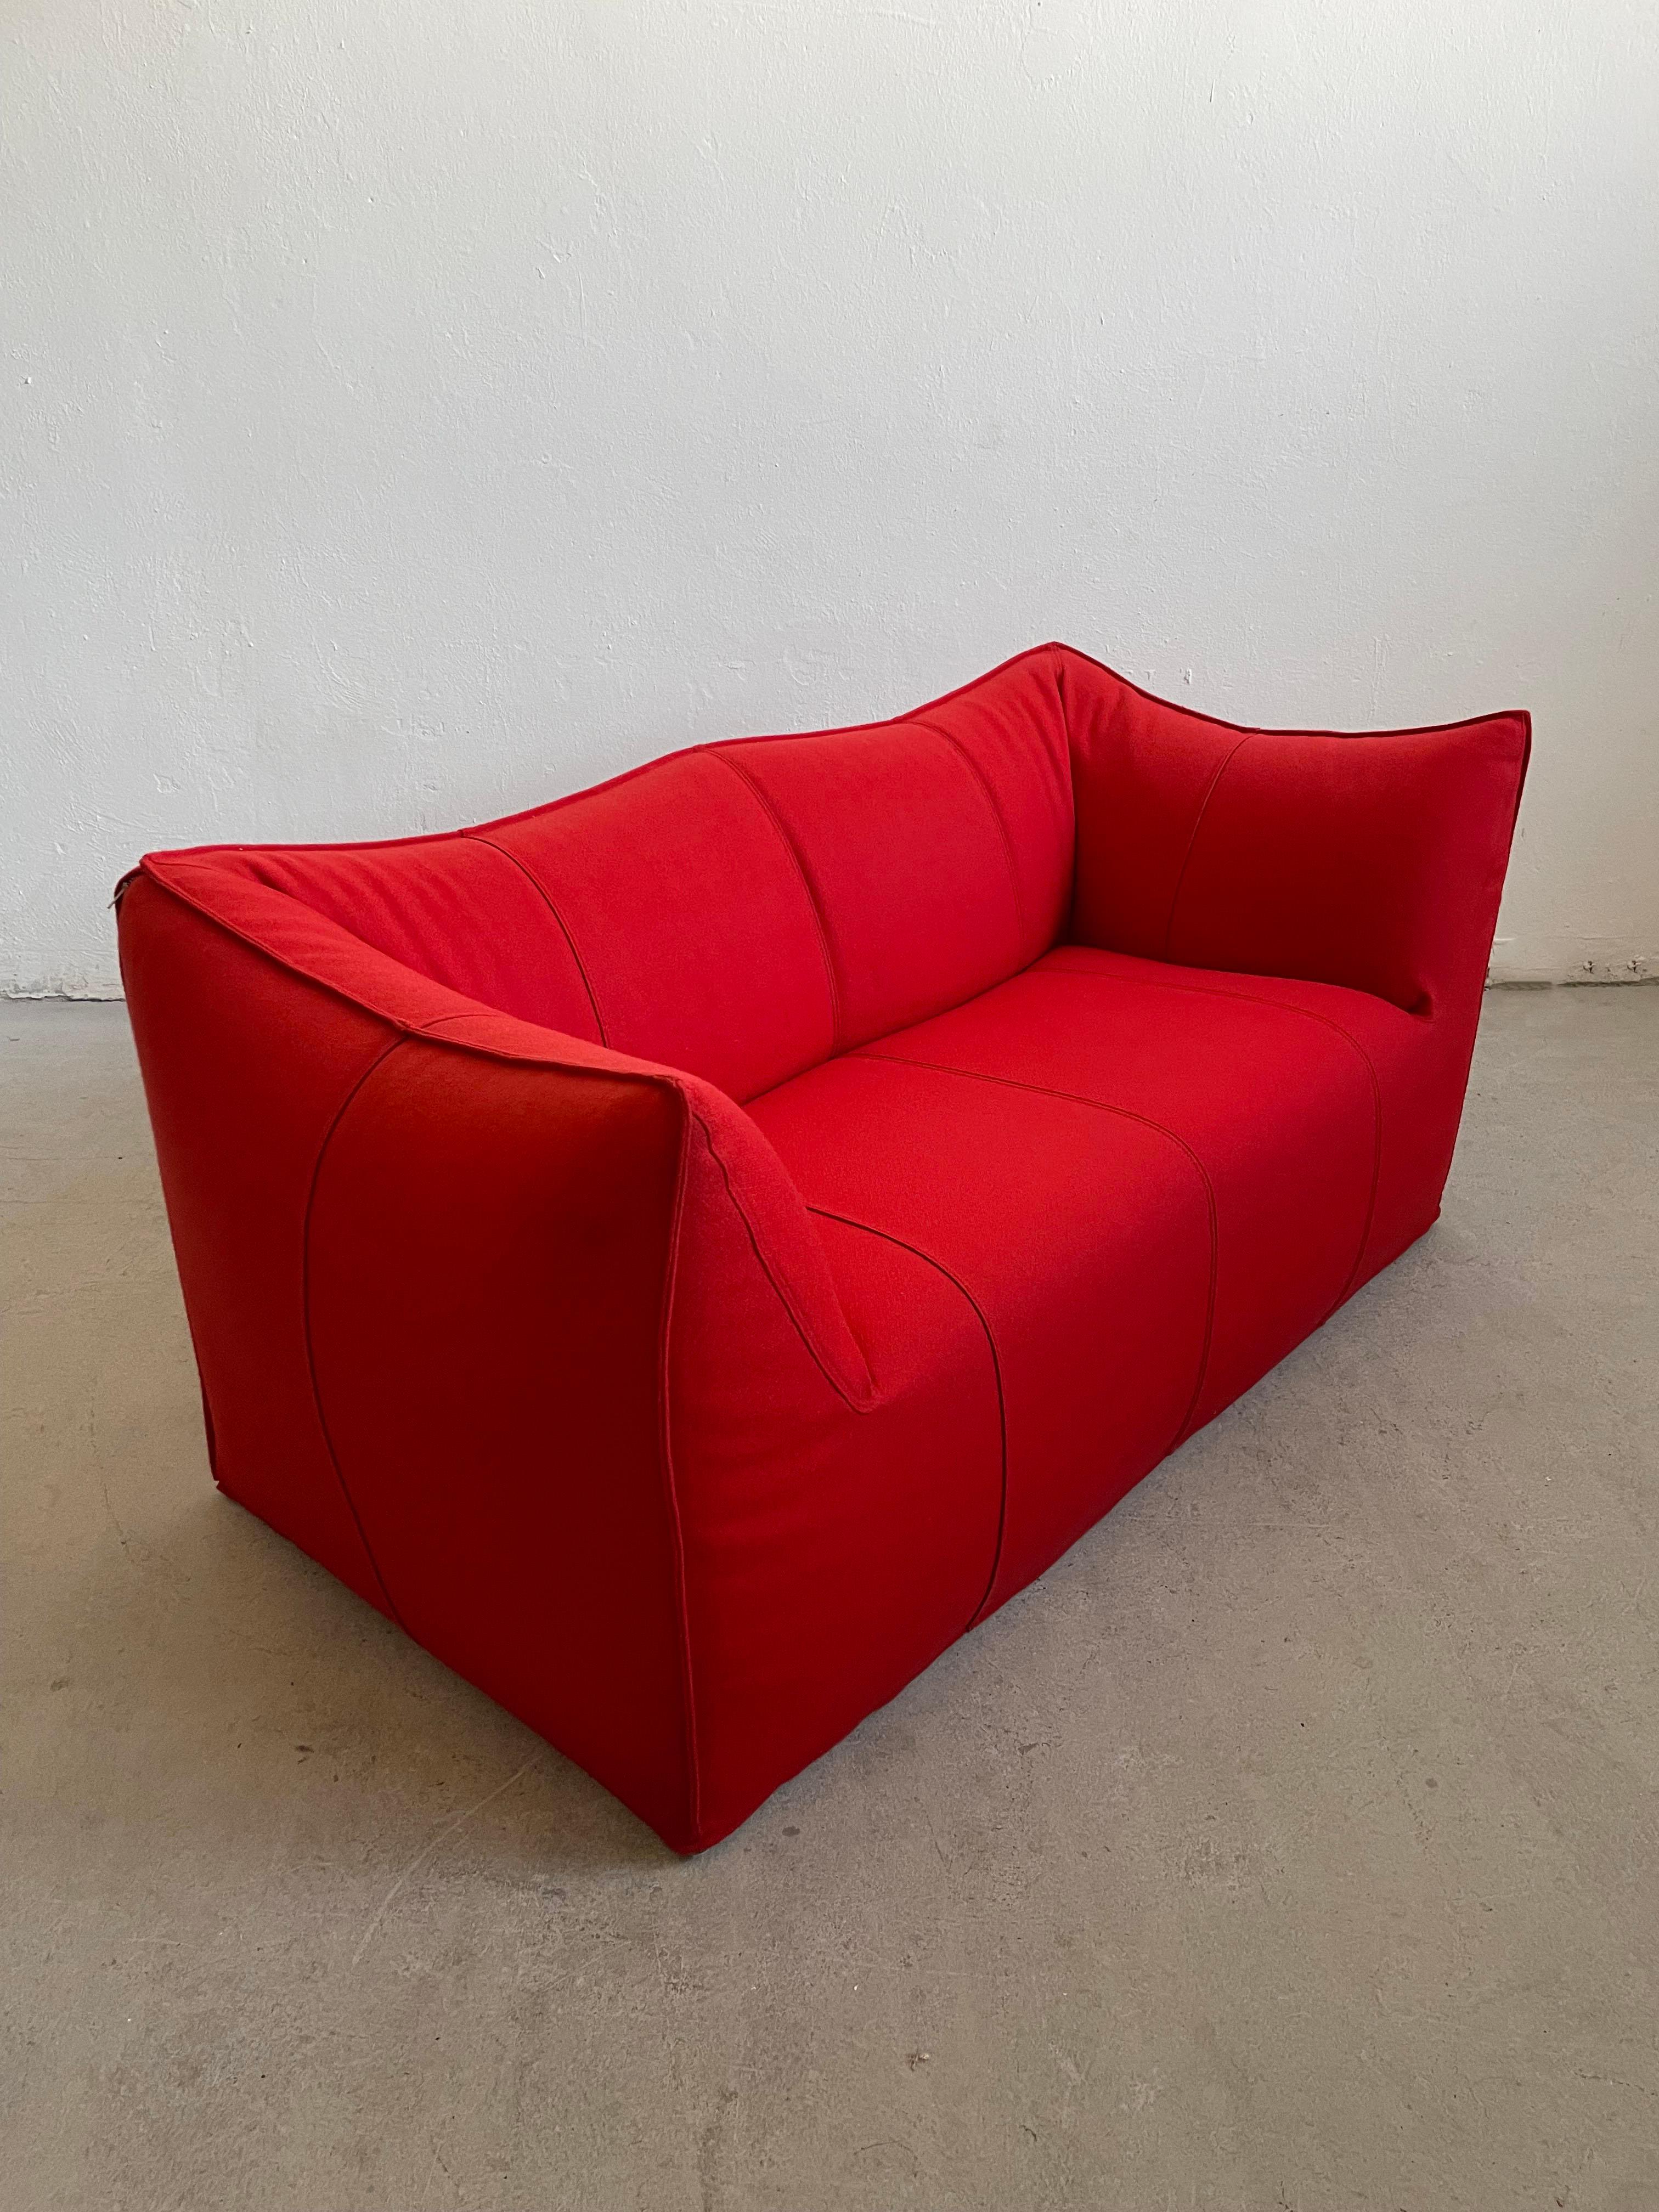 Mario Bellini Le Bambole ’07 Sofa B&B Italia in Red Wool, Removable Cover For Sale 5